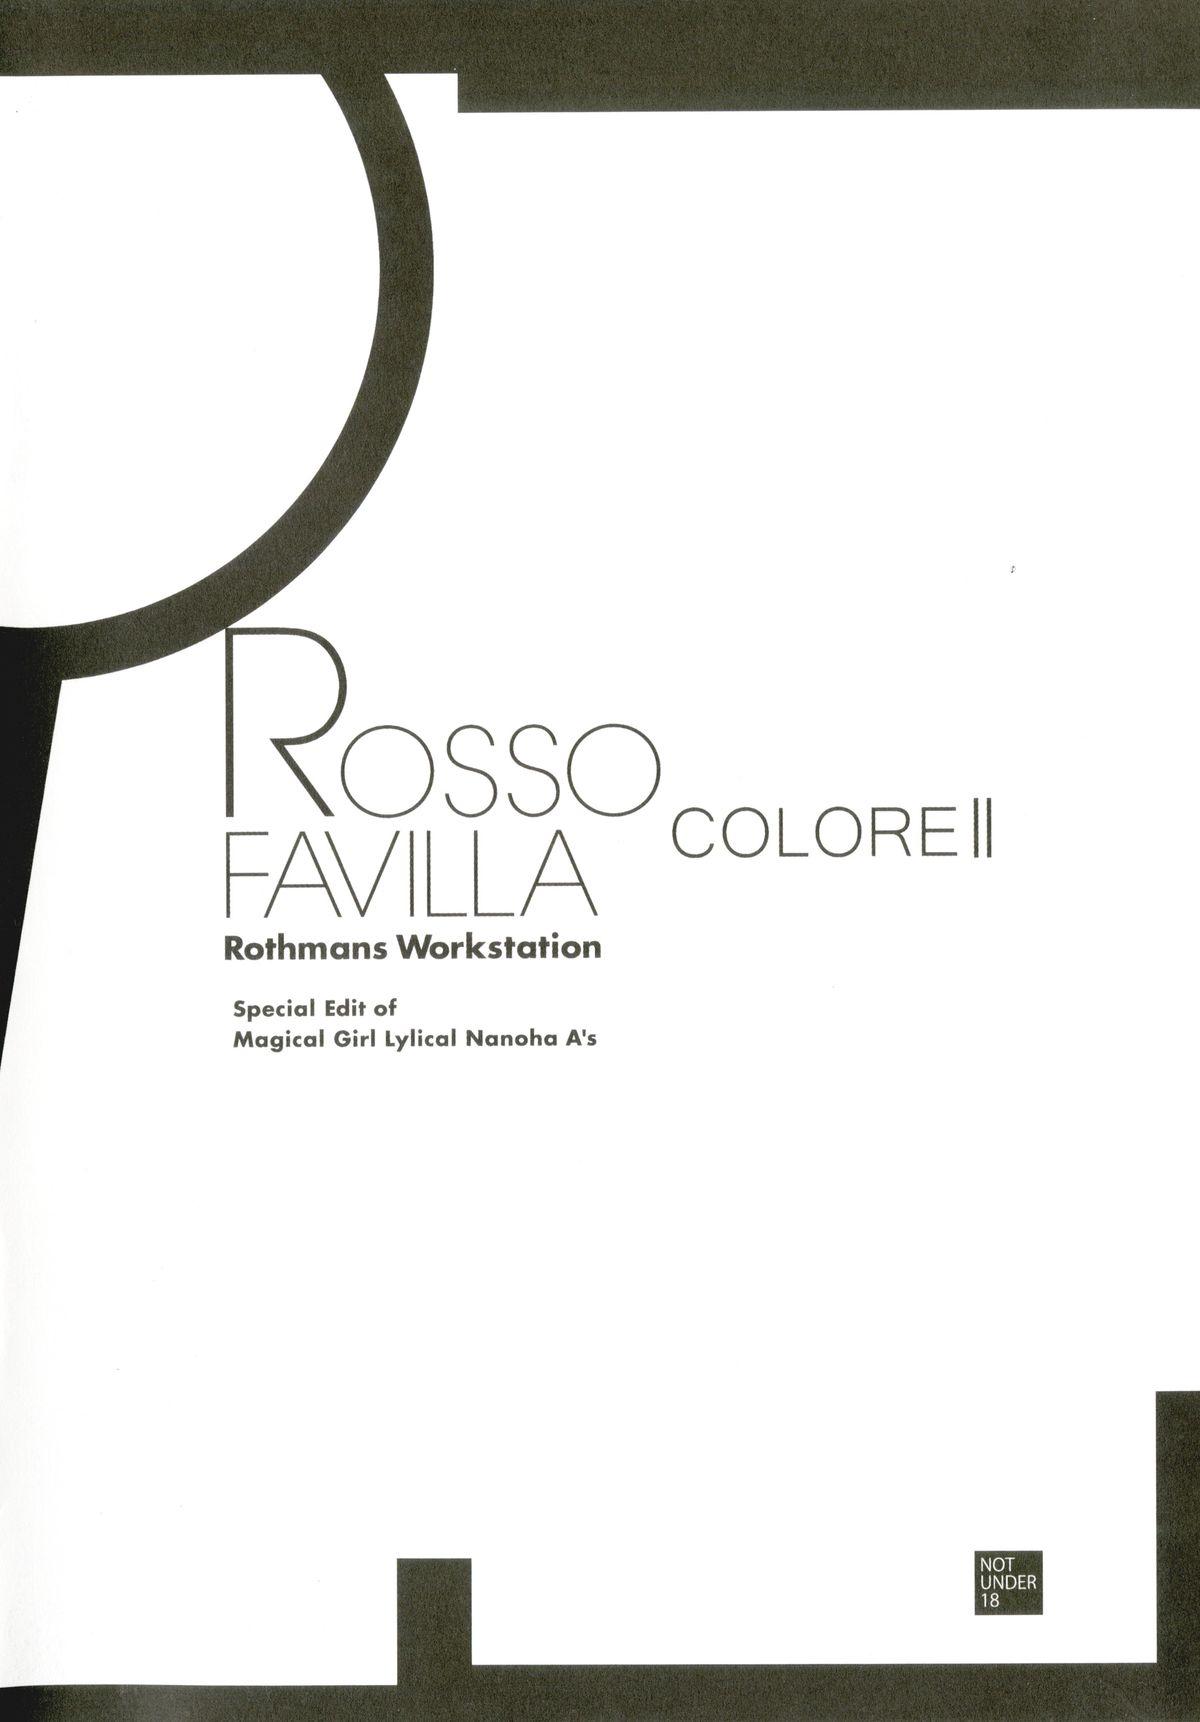 ROSSO FAVILLA COLORE II 23